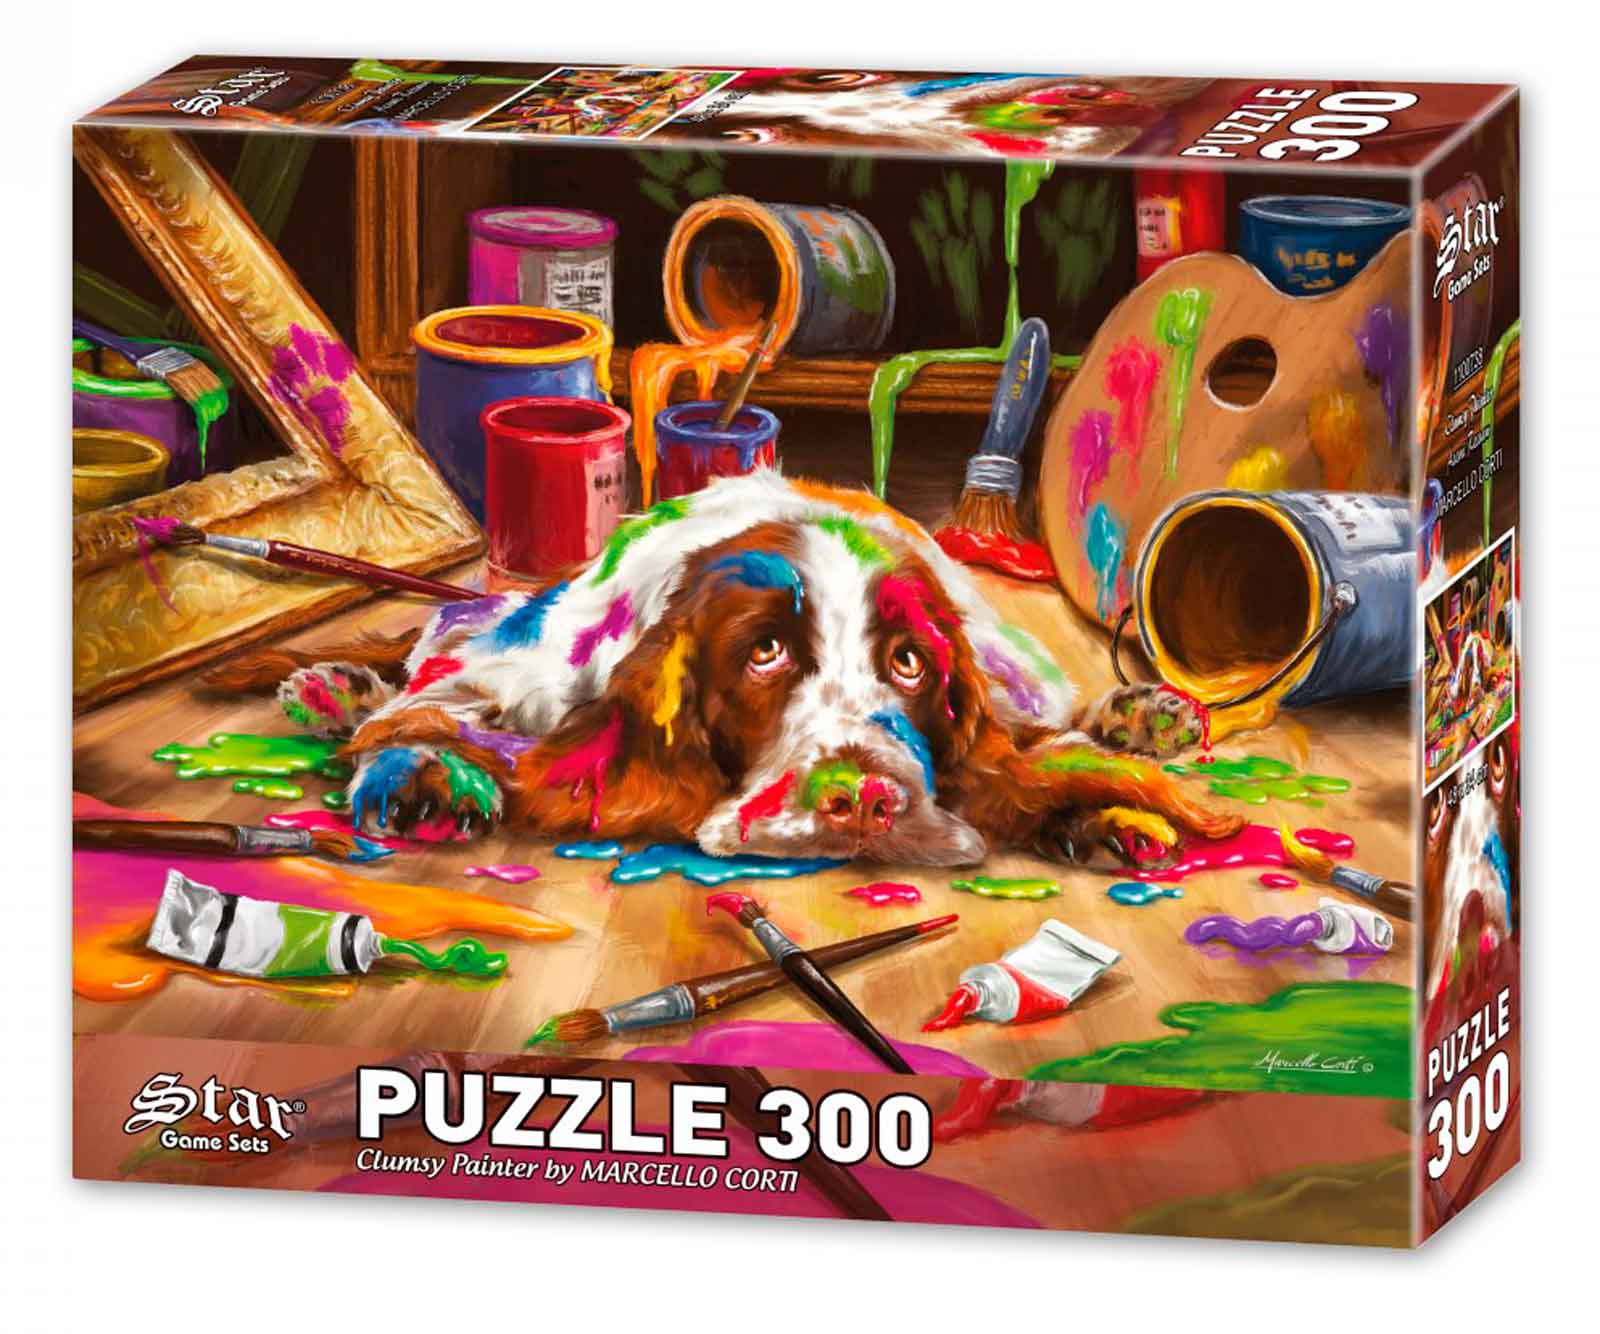 Comprar Puzzle Star El Torpe de 300 Piezas - Star-1100738